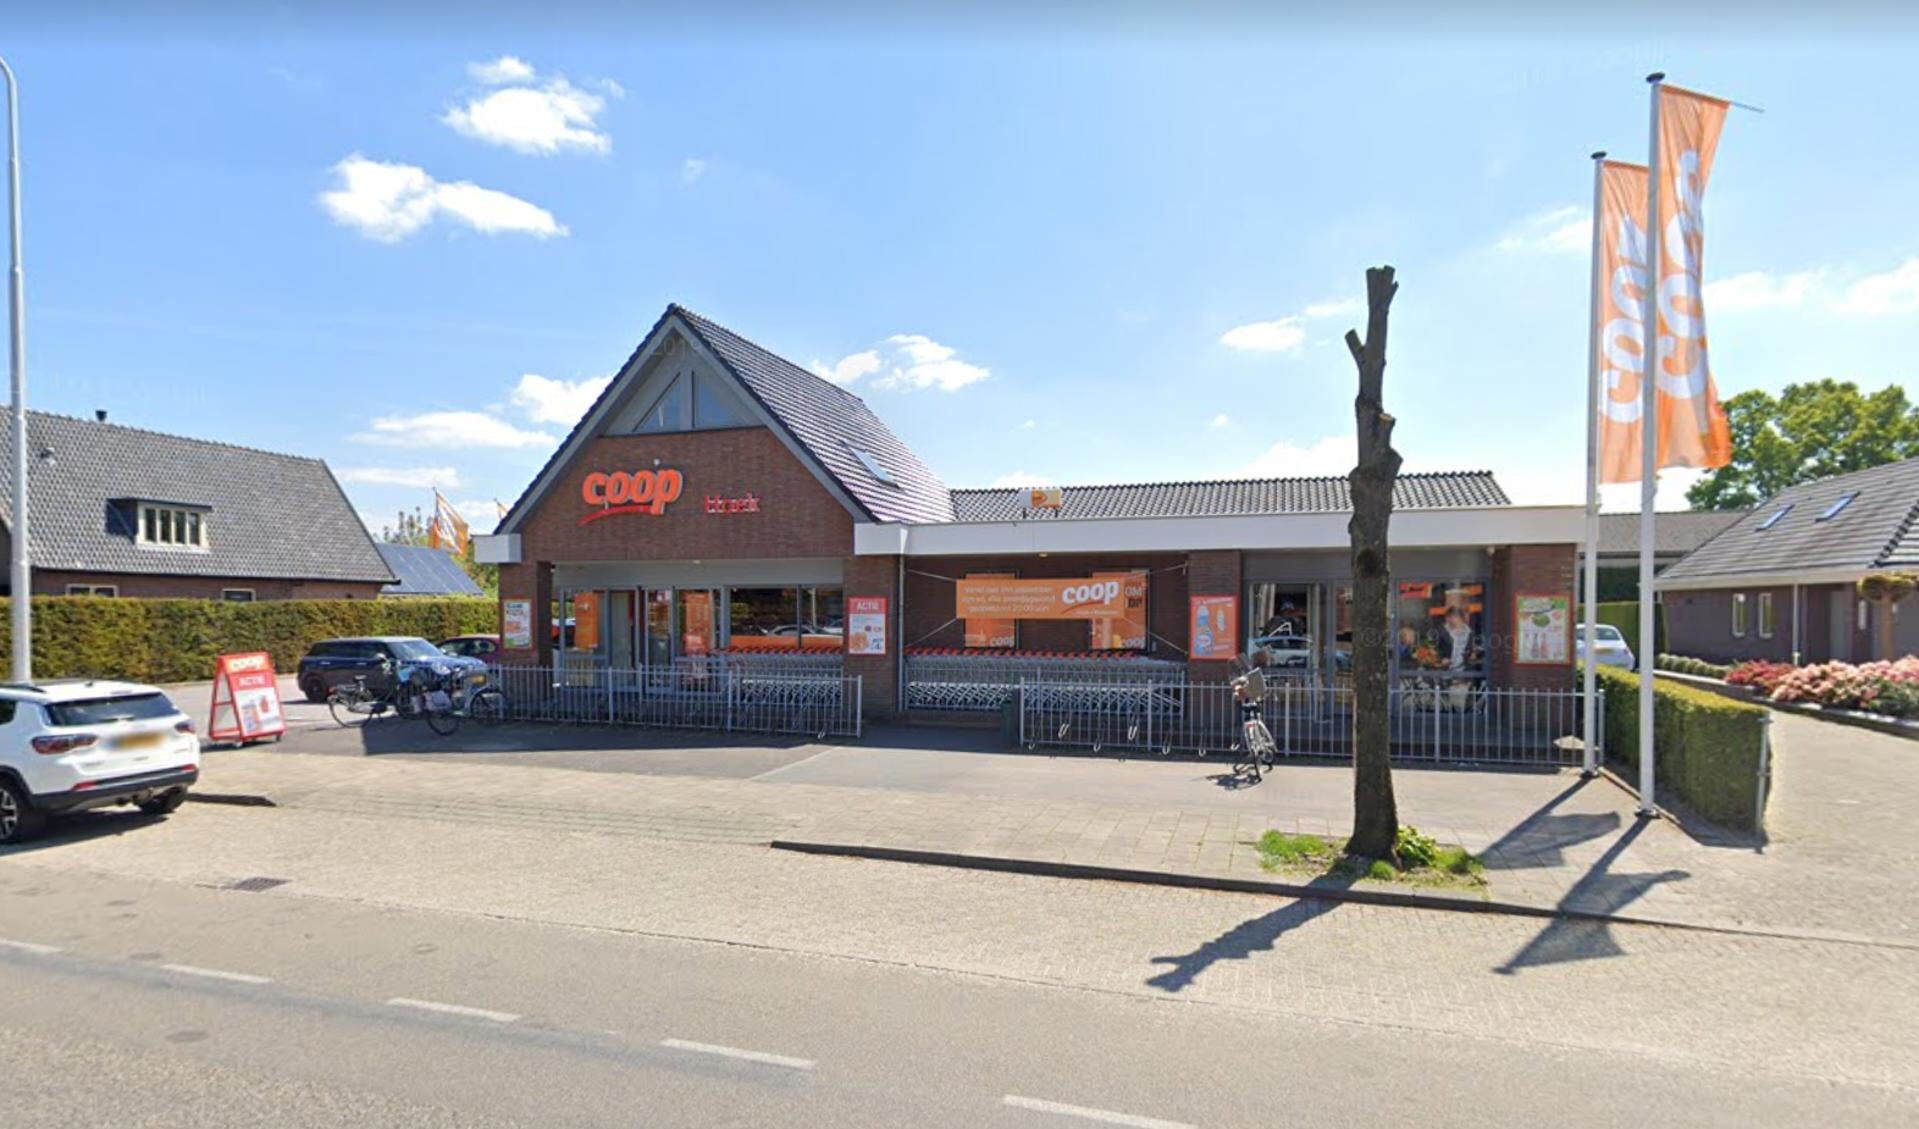 De Coop in Wekerom is de enige supermarkt van het dorp.